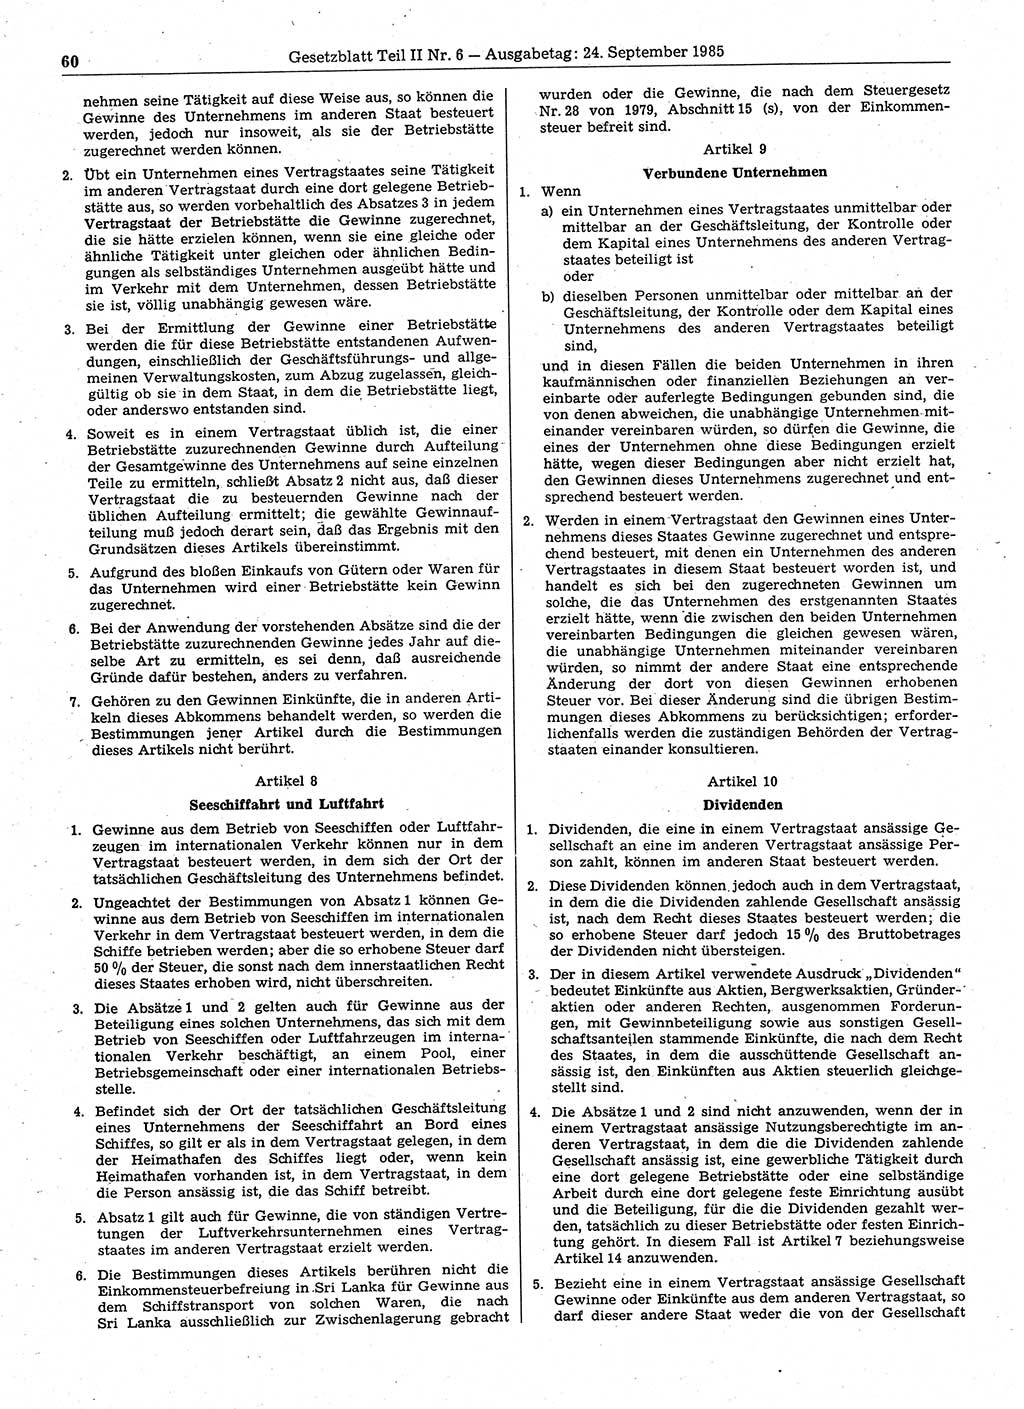 Gesetzblatt (GBl.) der Deutschen Demokratischen Republik (DDR) Teil ⅠⅠ 1985, Seite 60 (GBl. DDR ⅠⅠ 1985, S. 60)